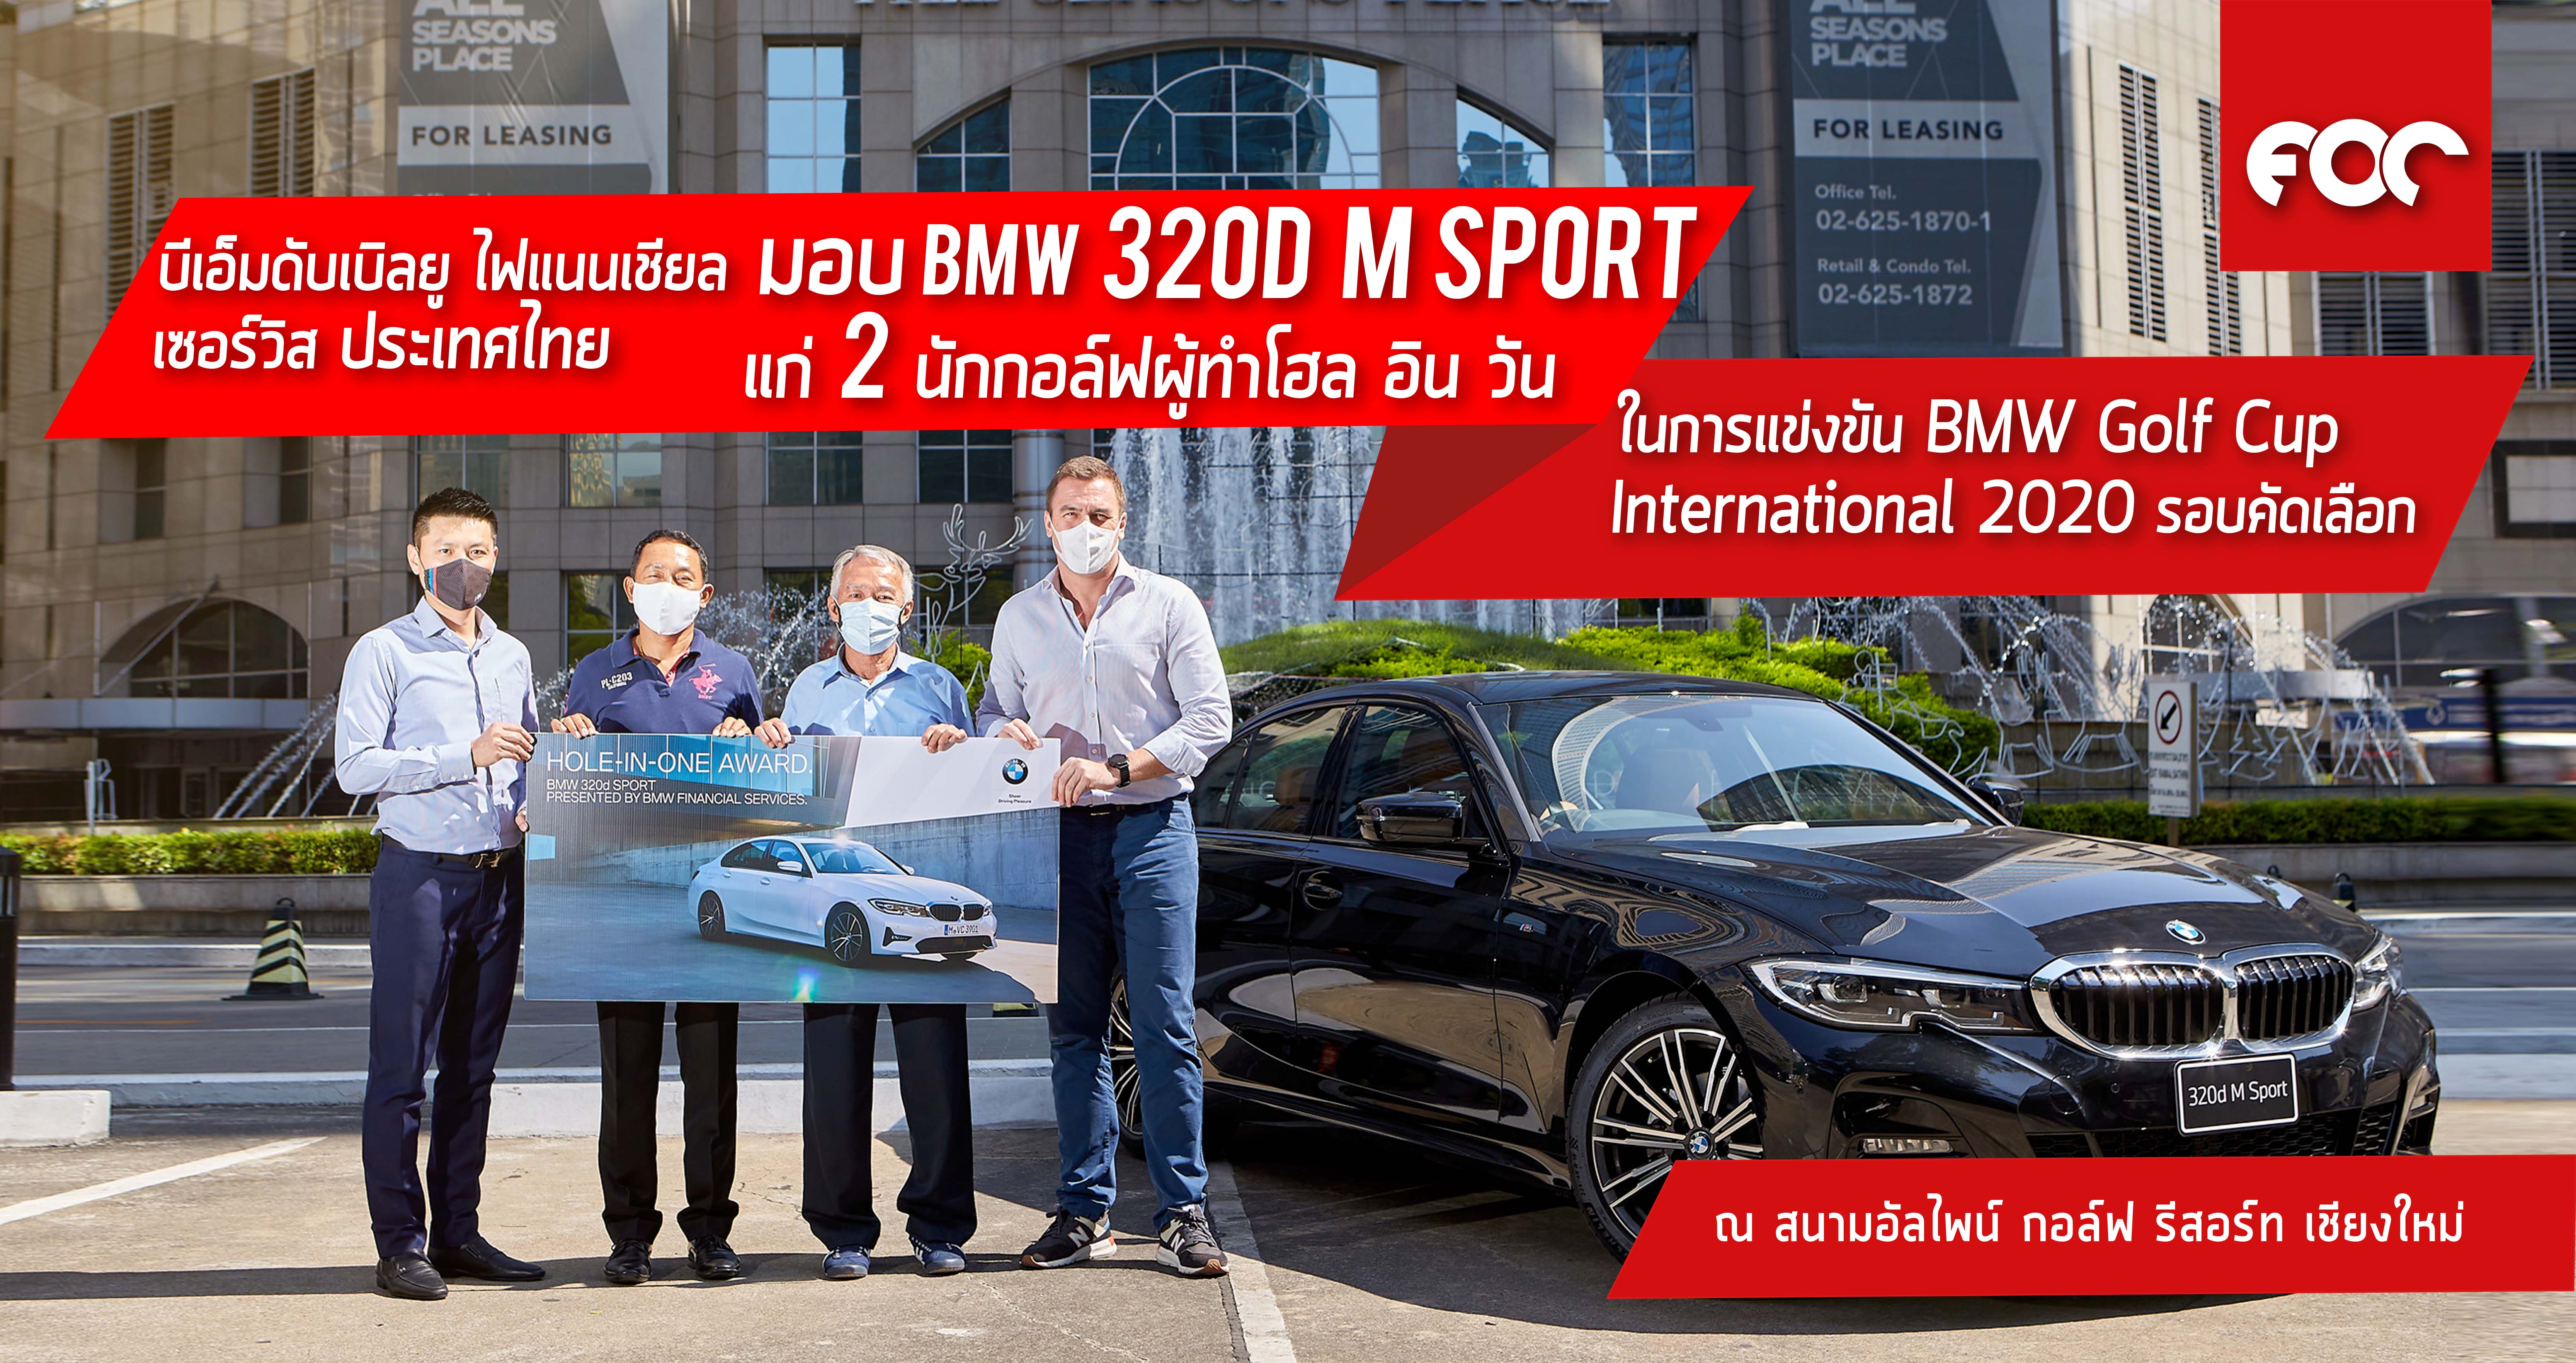 บีเอ็มดับเบิลยู ไฟแนนเชียล เซอร์วิส ประเทศไทย มอบบีเอ็มดับเบิลยู 320d M Sport แก่สองนักกอล์ฟผู้ทำโฮล-อิน-วันในการแข่งขัน BMW Golf Cup International 2020 รอบคัดเลือก